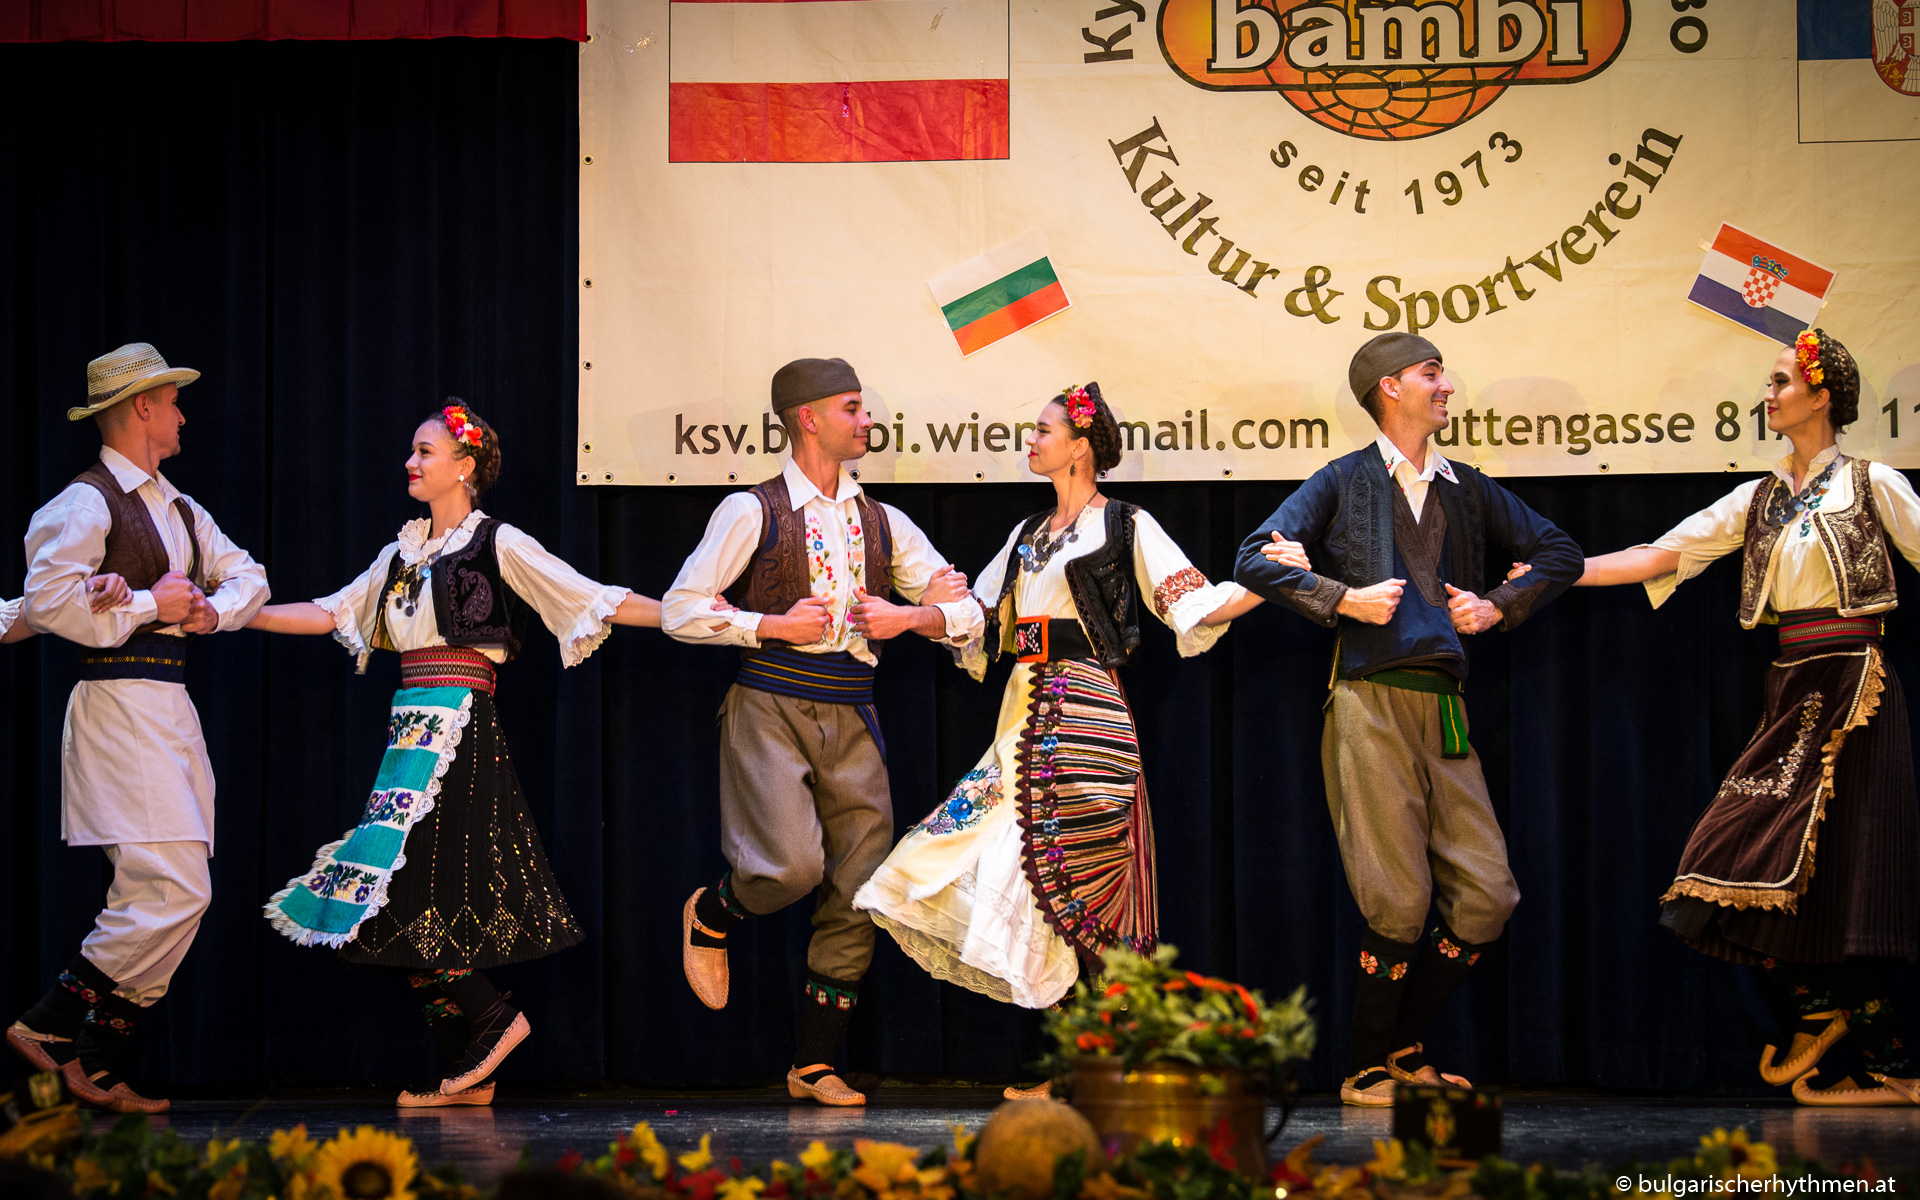 Neukunden: Wir tanzen Folklore und kommunizieren für den Österreichischen Verband der serbischen Folklorevereine und den serbischen Kultur- und Sportverein Bambi